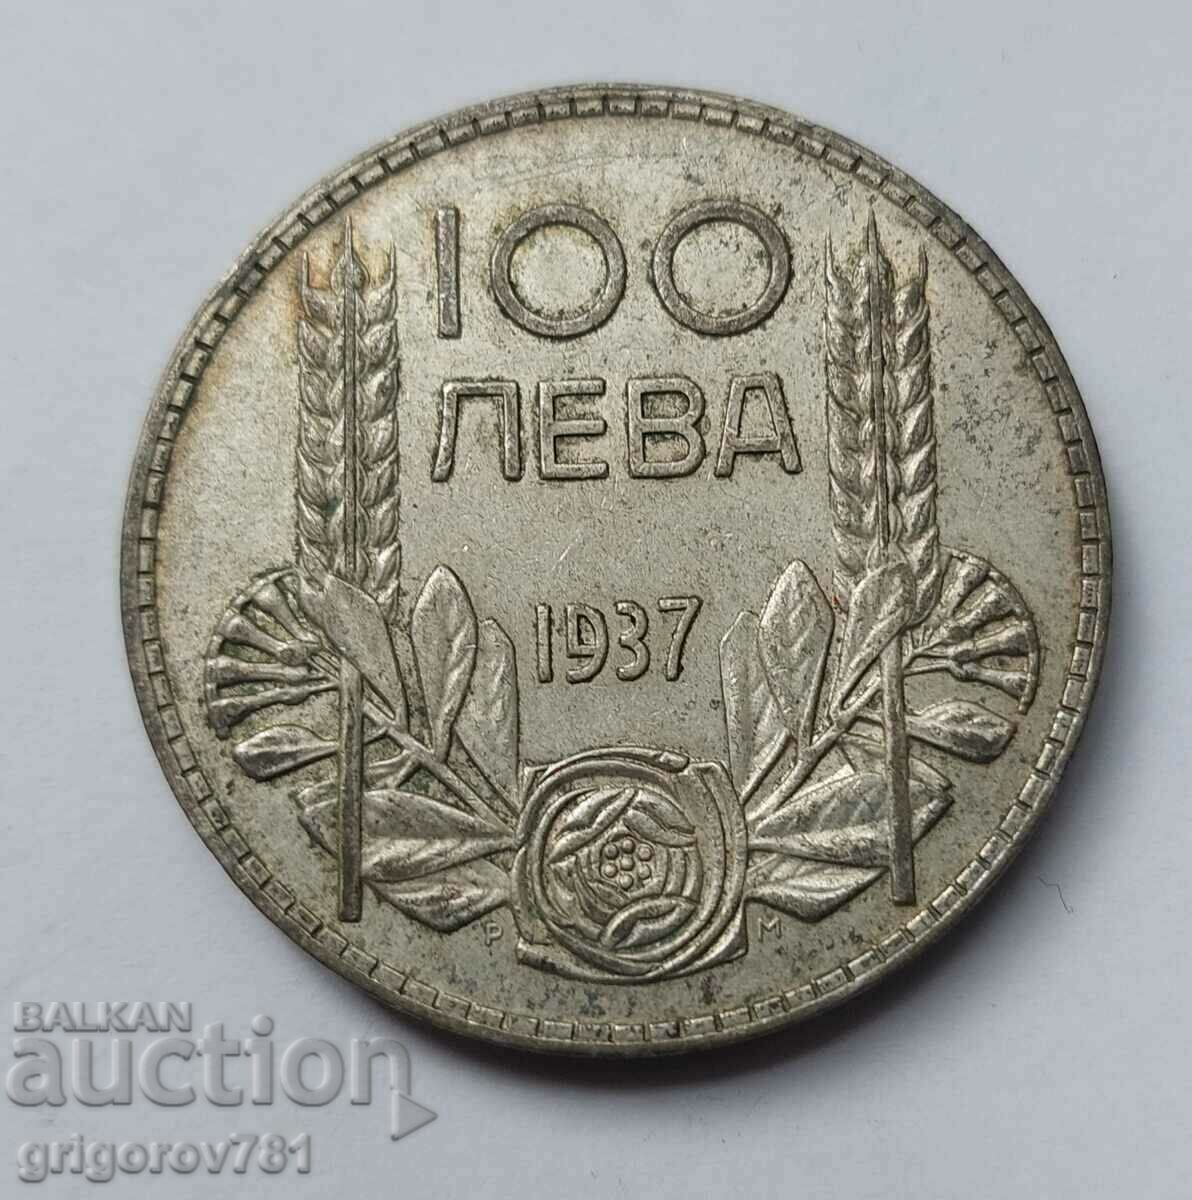 100 leva silver Bulgaria 1937 - silver coin #8